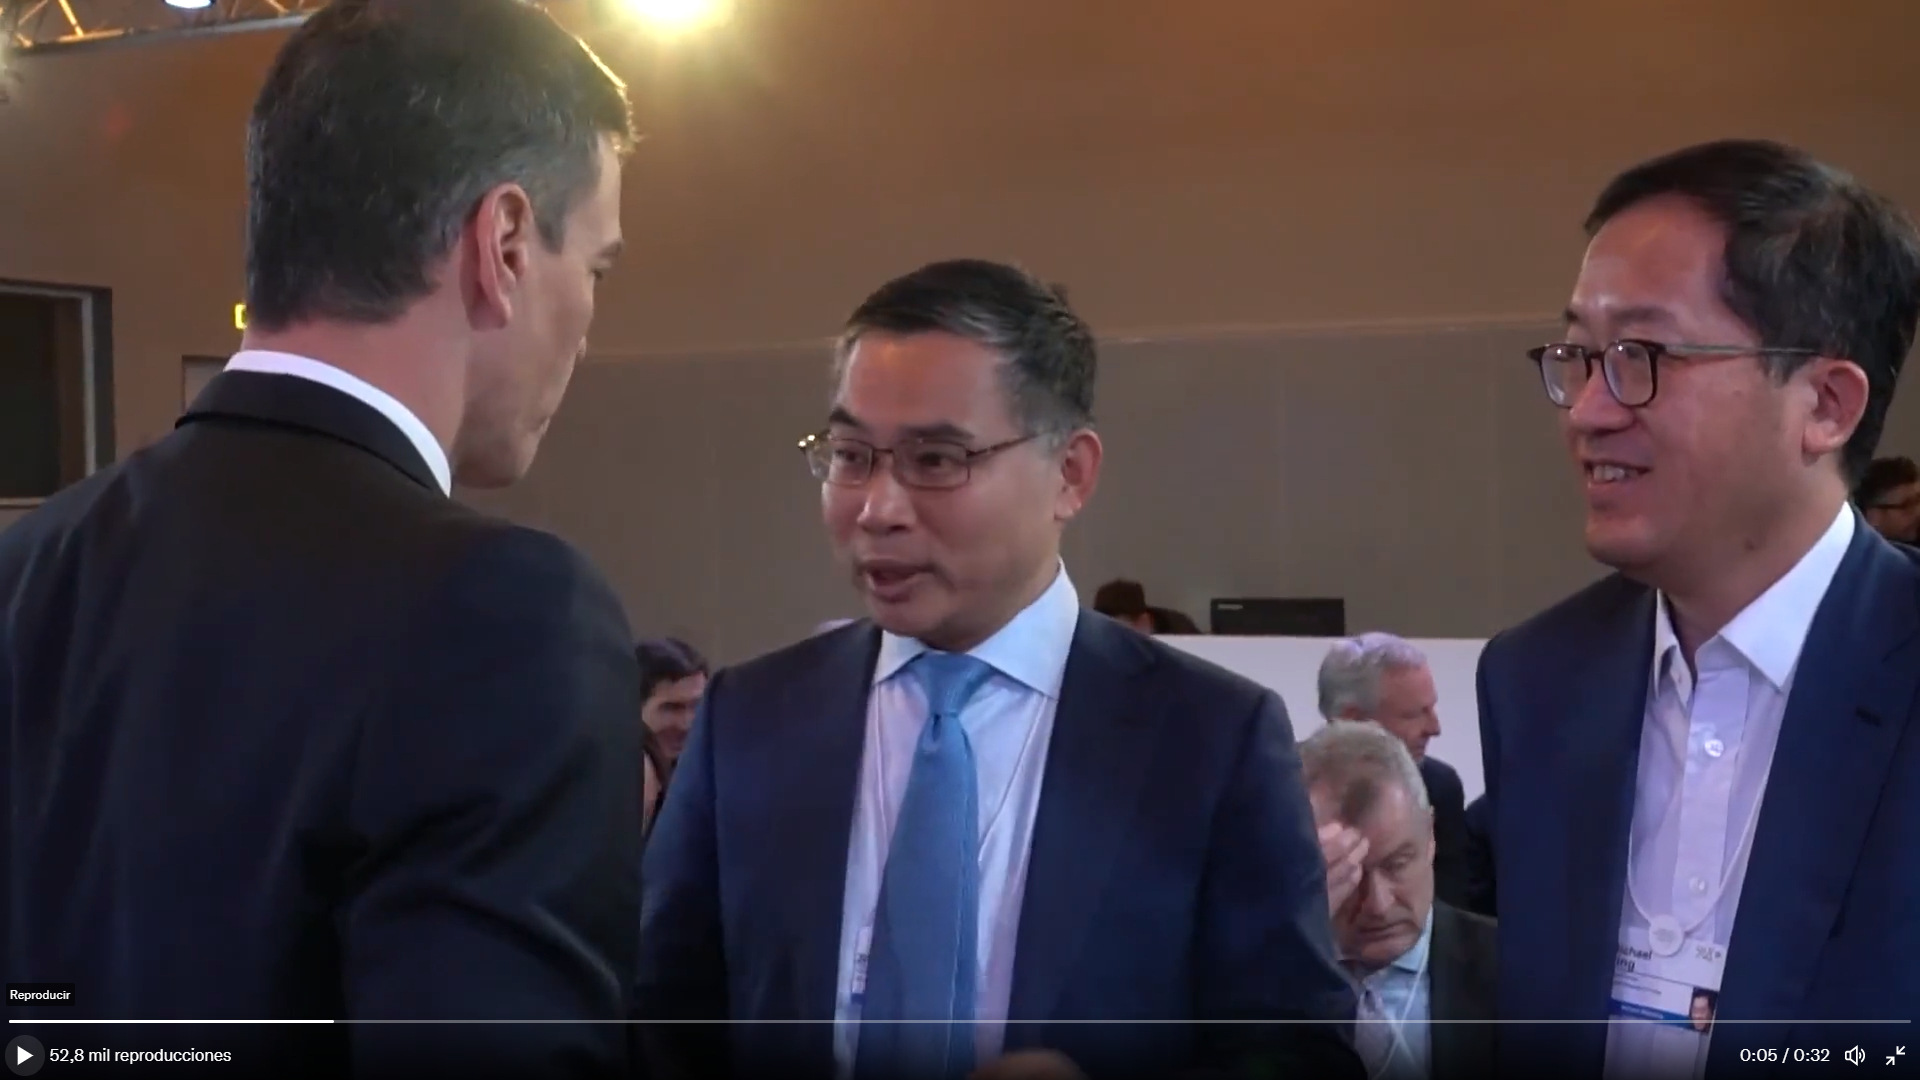 El jefe chino de Envision da otra oportunidad a Sánchez tras verlo en Davos: "No me enfado"